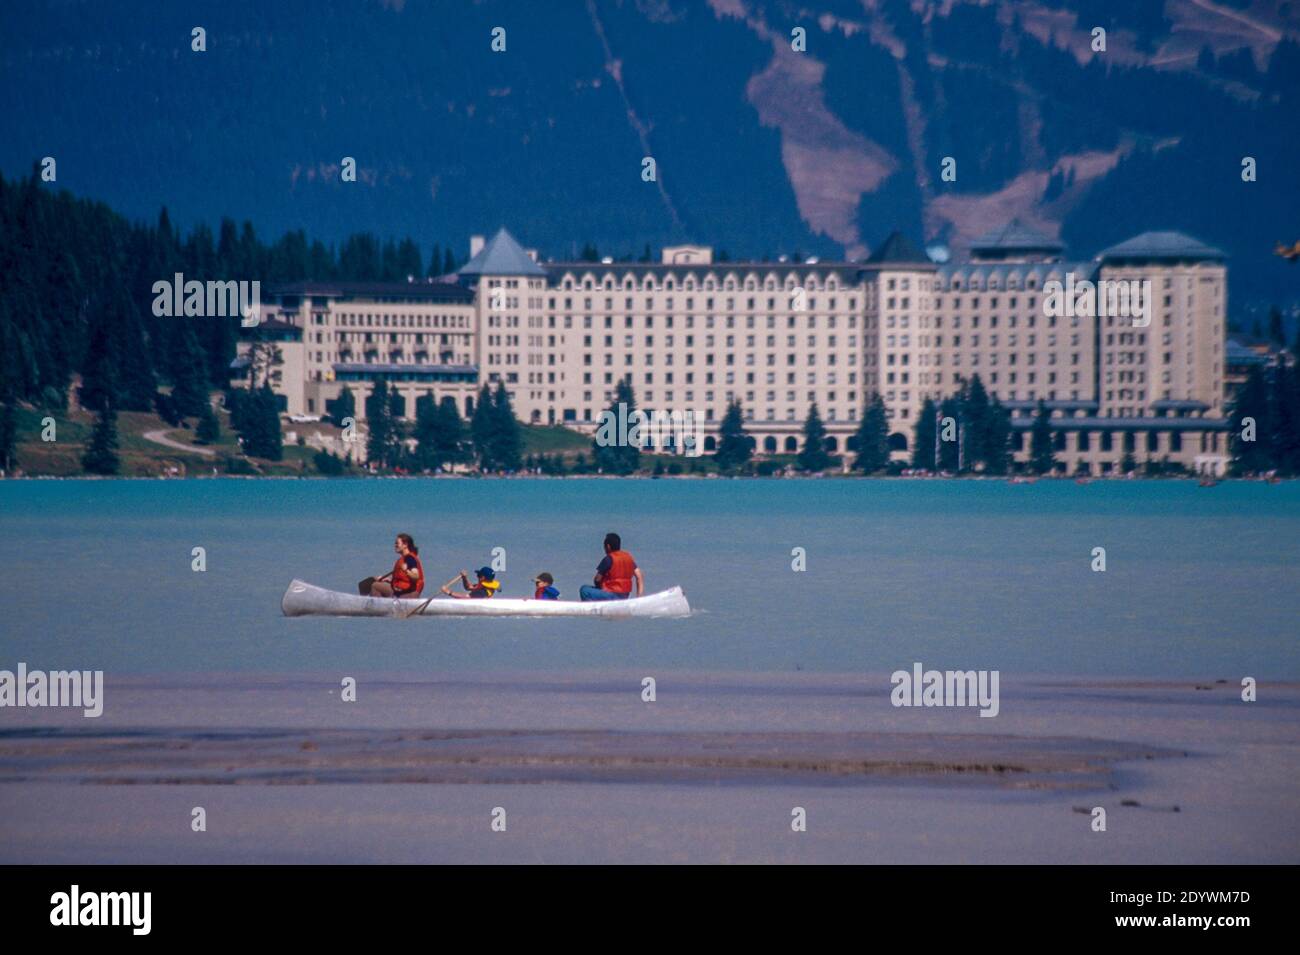 Canoa per famiglie sul lago Louise, Banff NP, Alberta, Canada. Hotel Fairmont Chateau sullo sfondo. Foto Stock